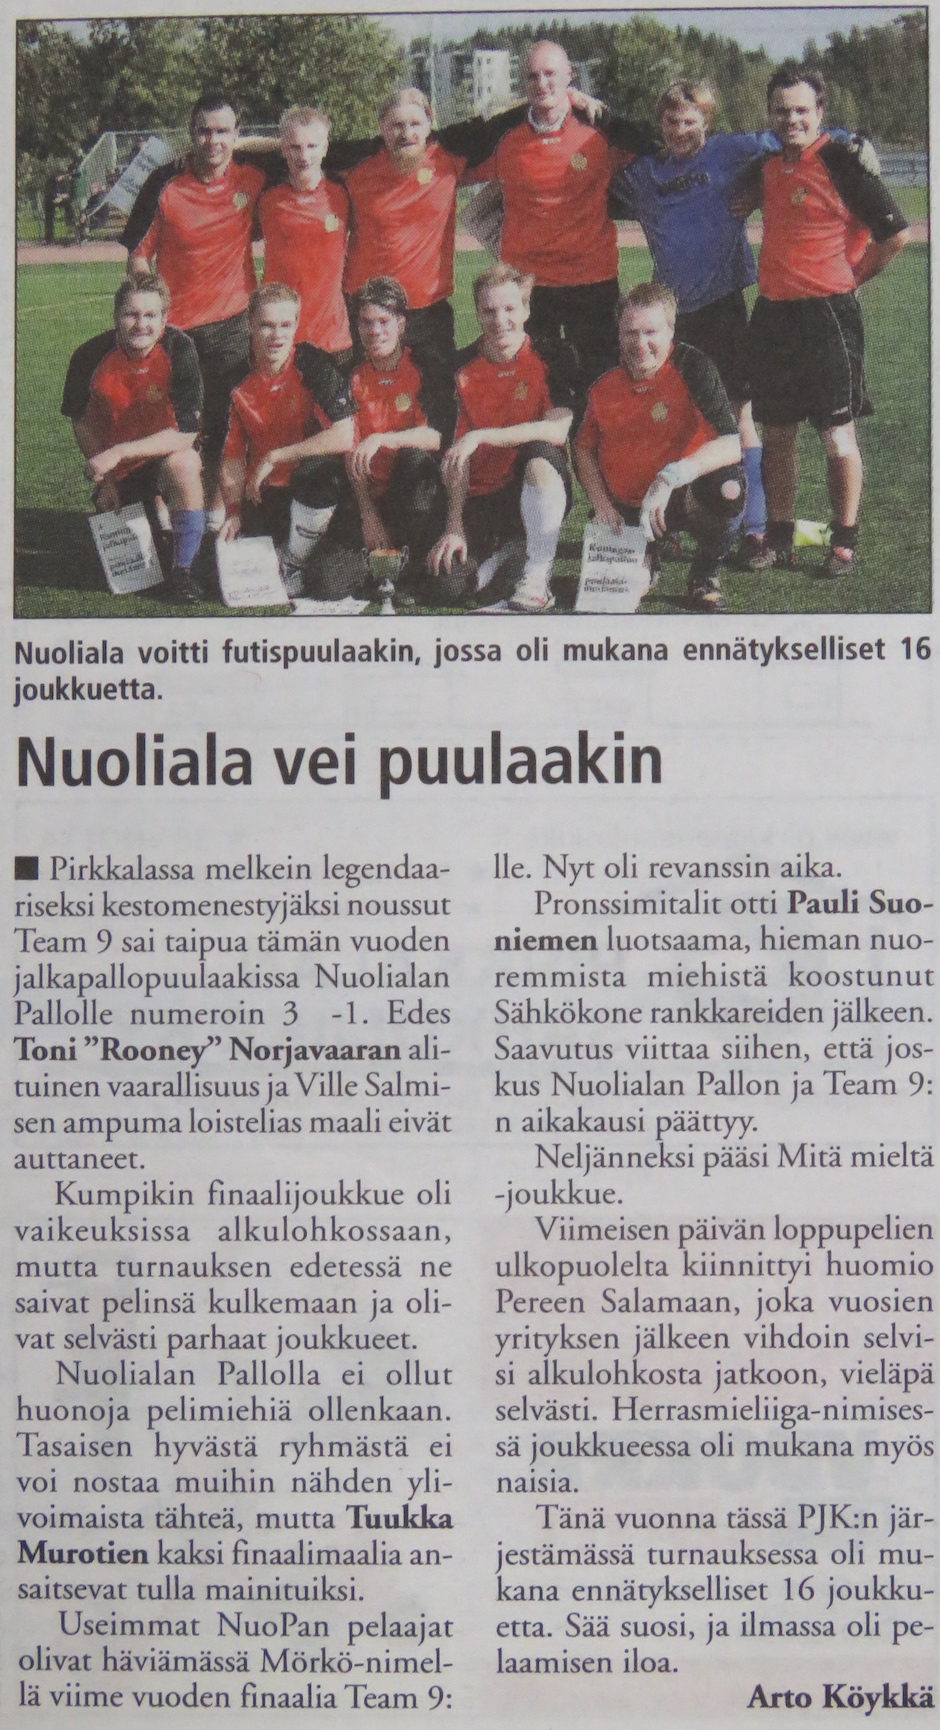 Turnausraportti Pirkkalaisessa 30.09. 2009